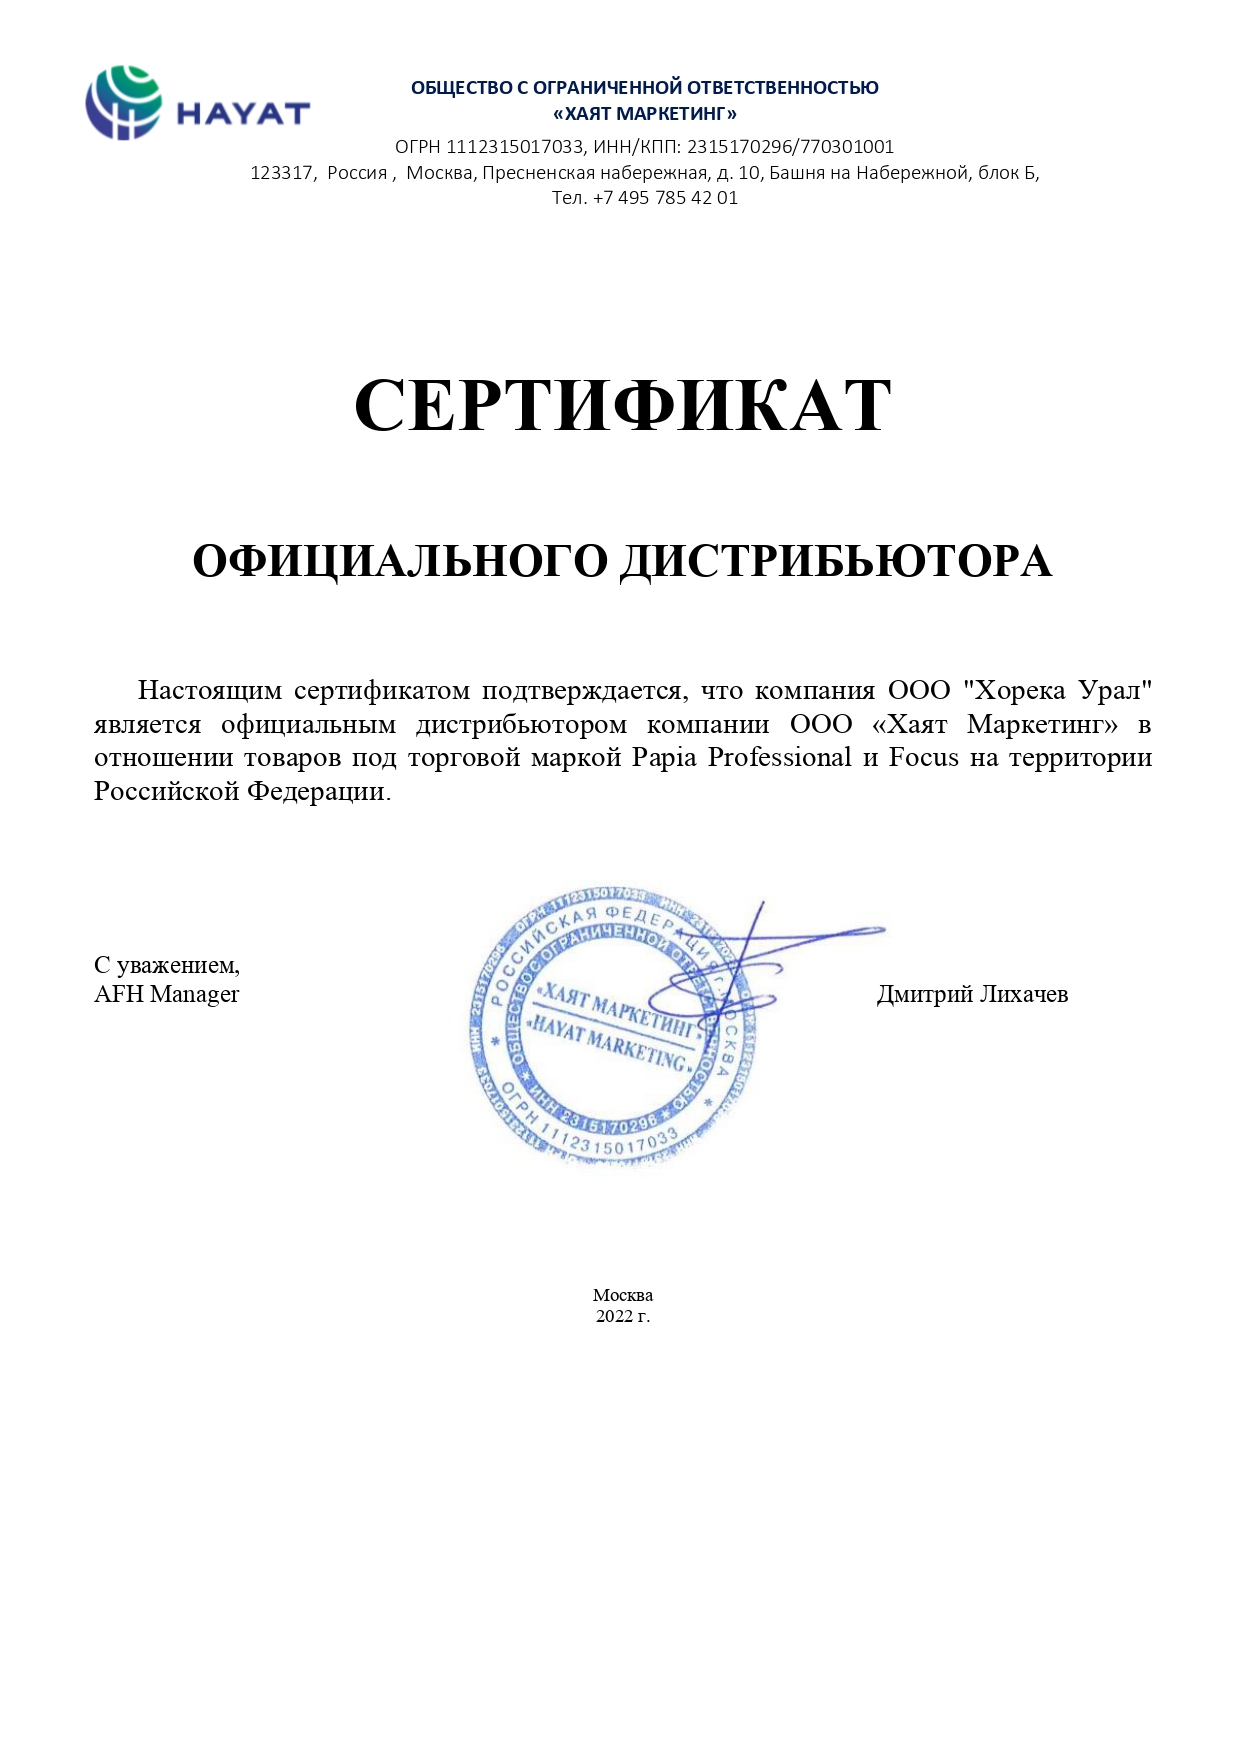 Сертификат дистрибьюции FOCUS 2022